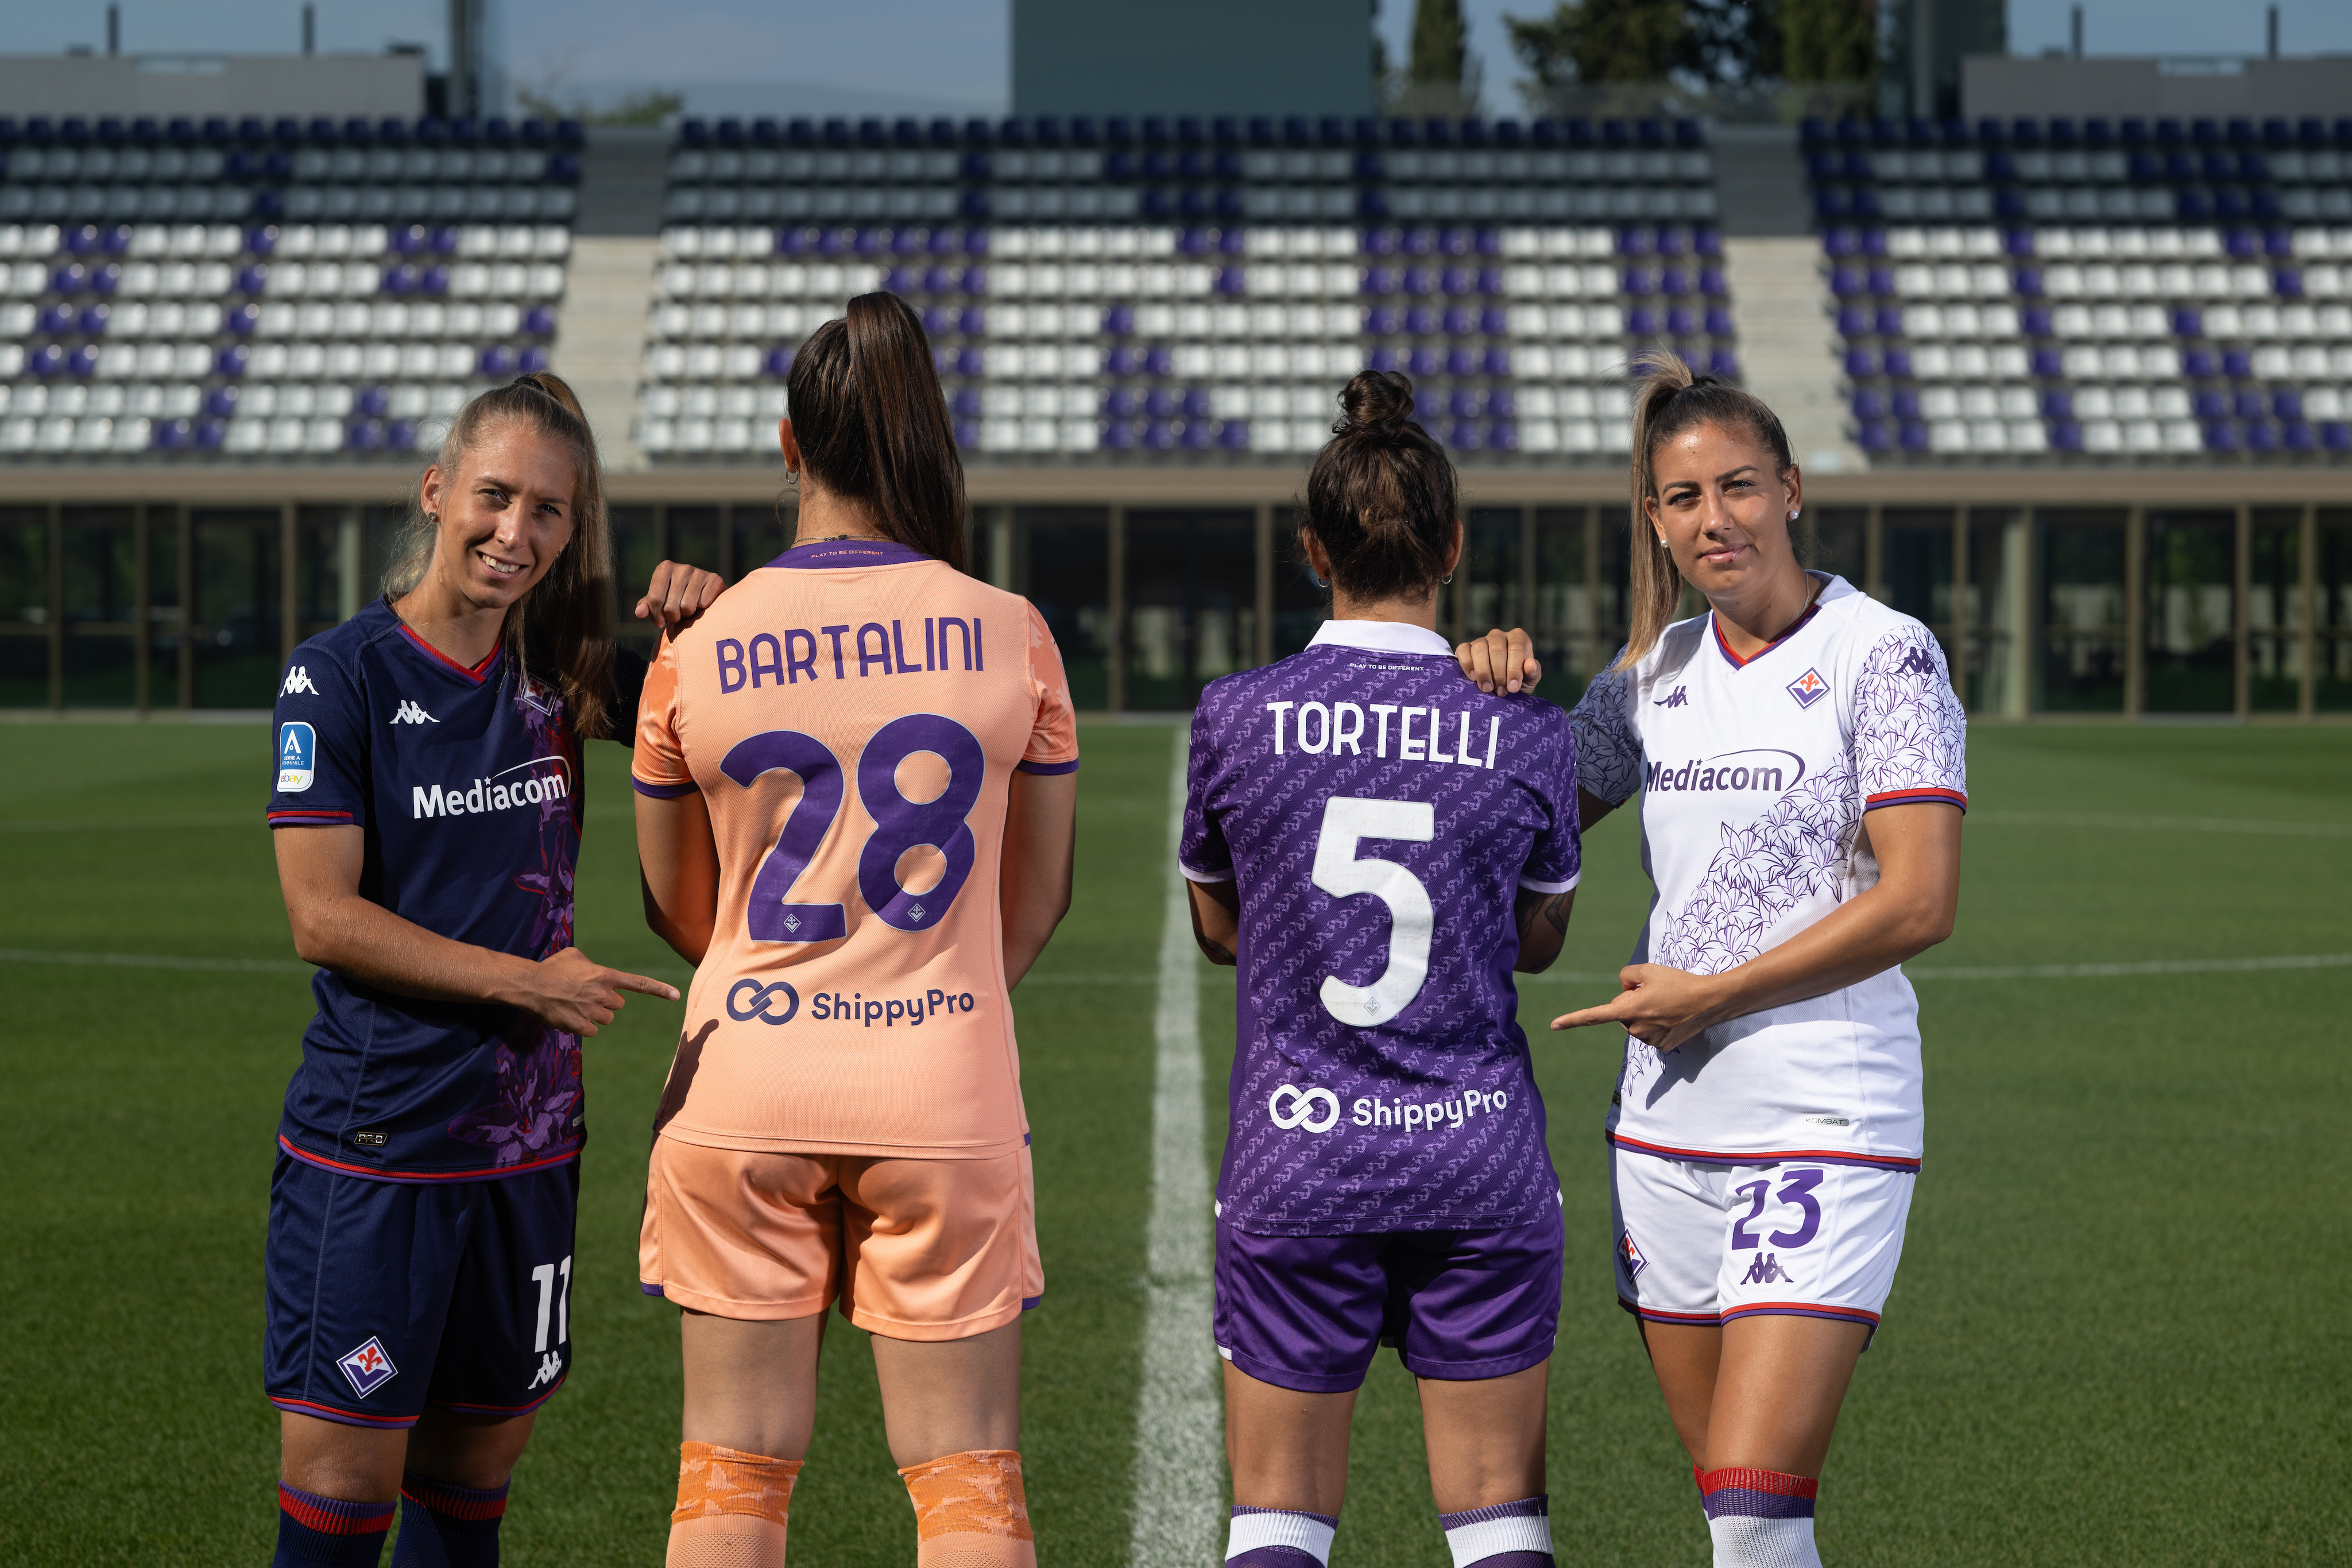 ACF Fiorentina Femminile - #TBT, ⌛️ Una grande vittoria contro il  Sassuolo! Era l'anno ______!✍️ Completa tu! #ForzaViola 💜 #Fiorentina  #SerieAFemminile